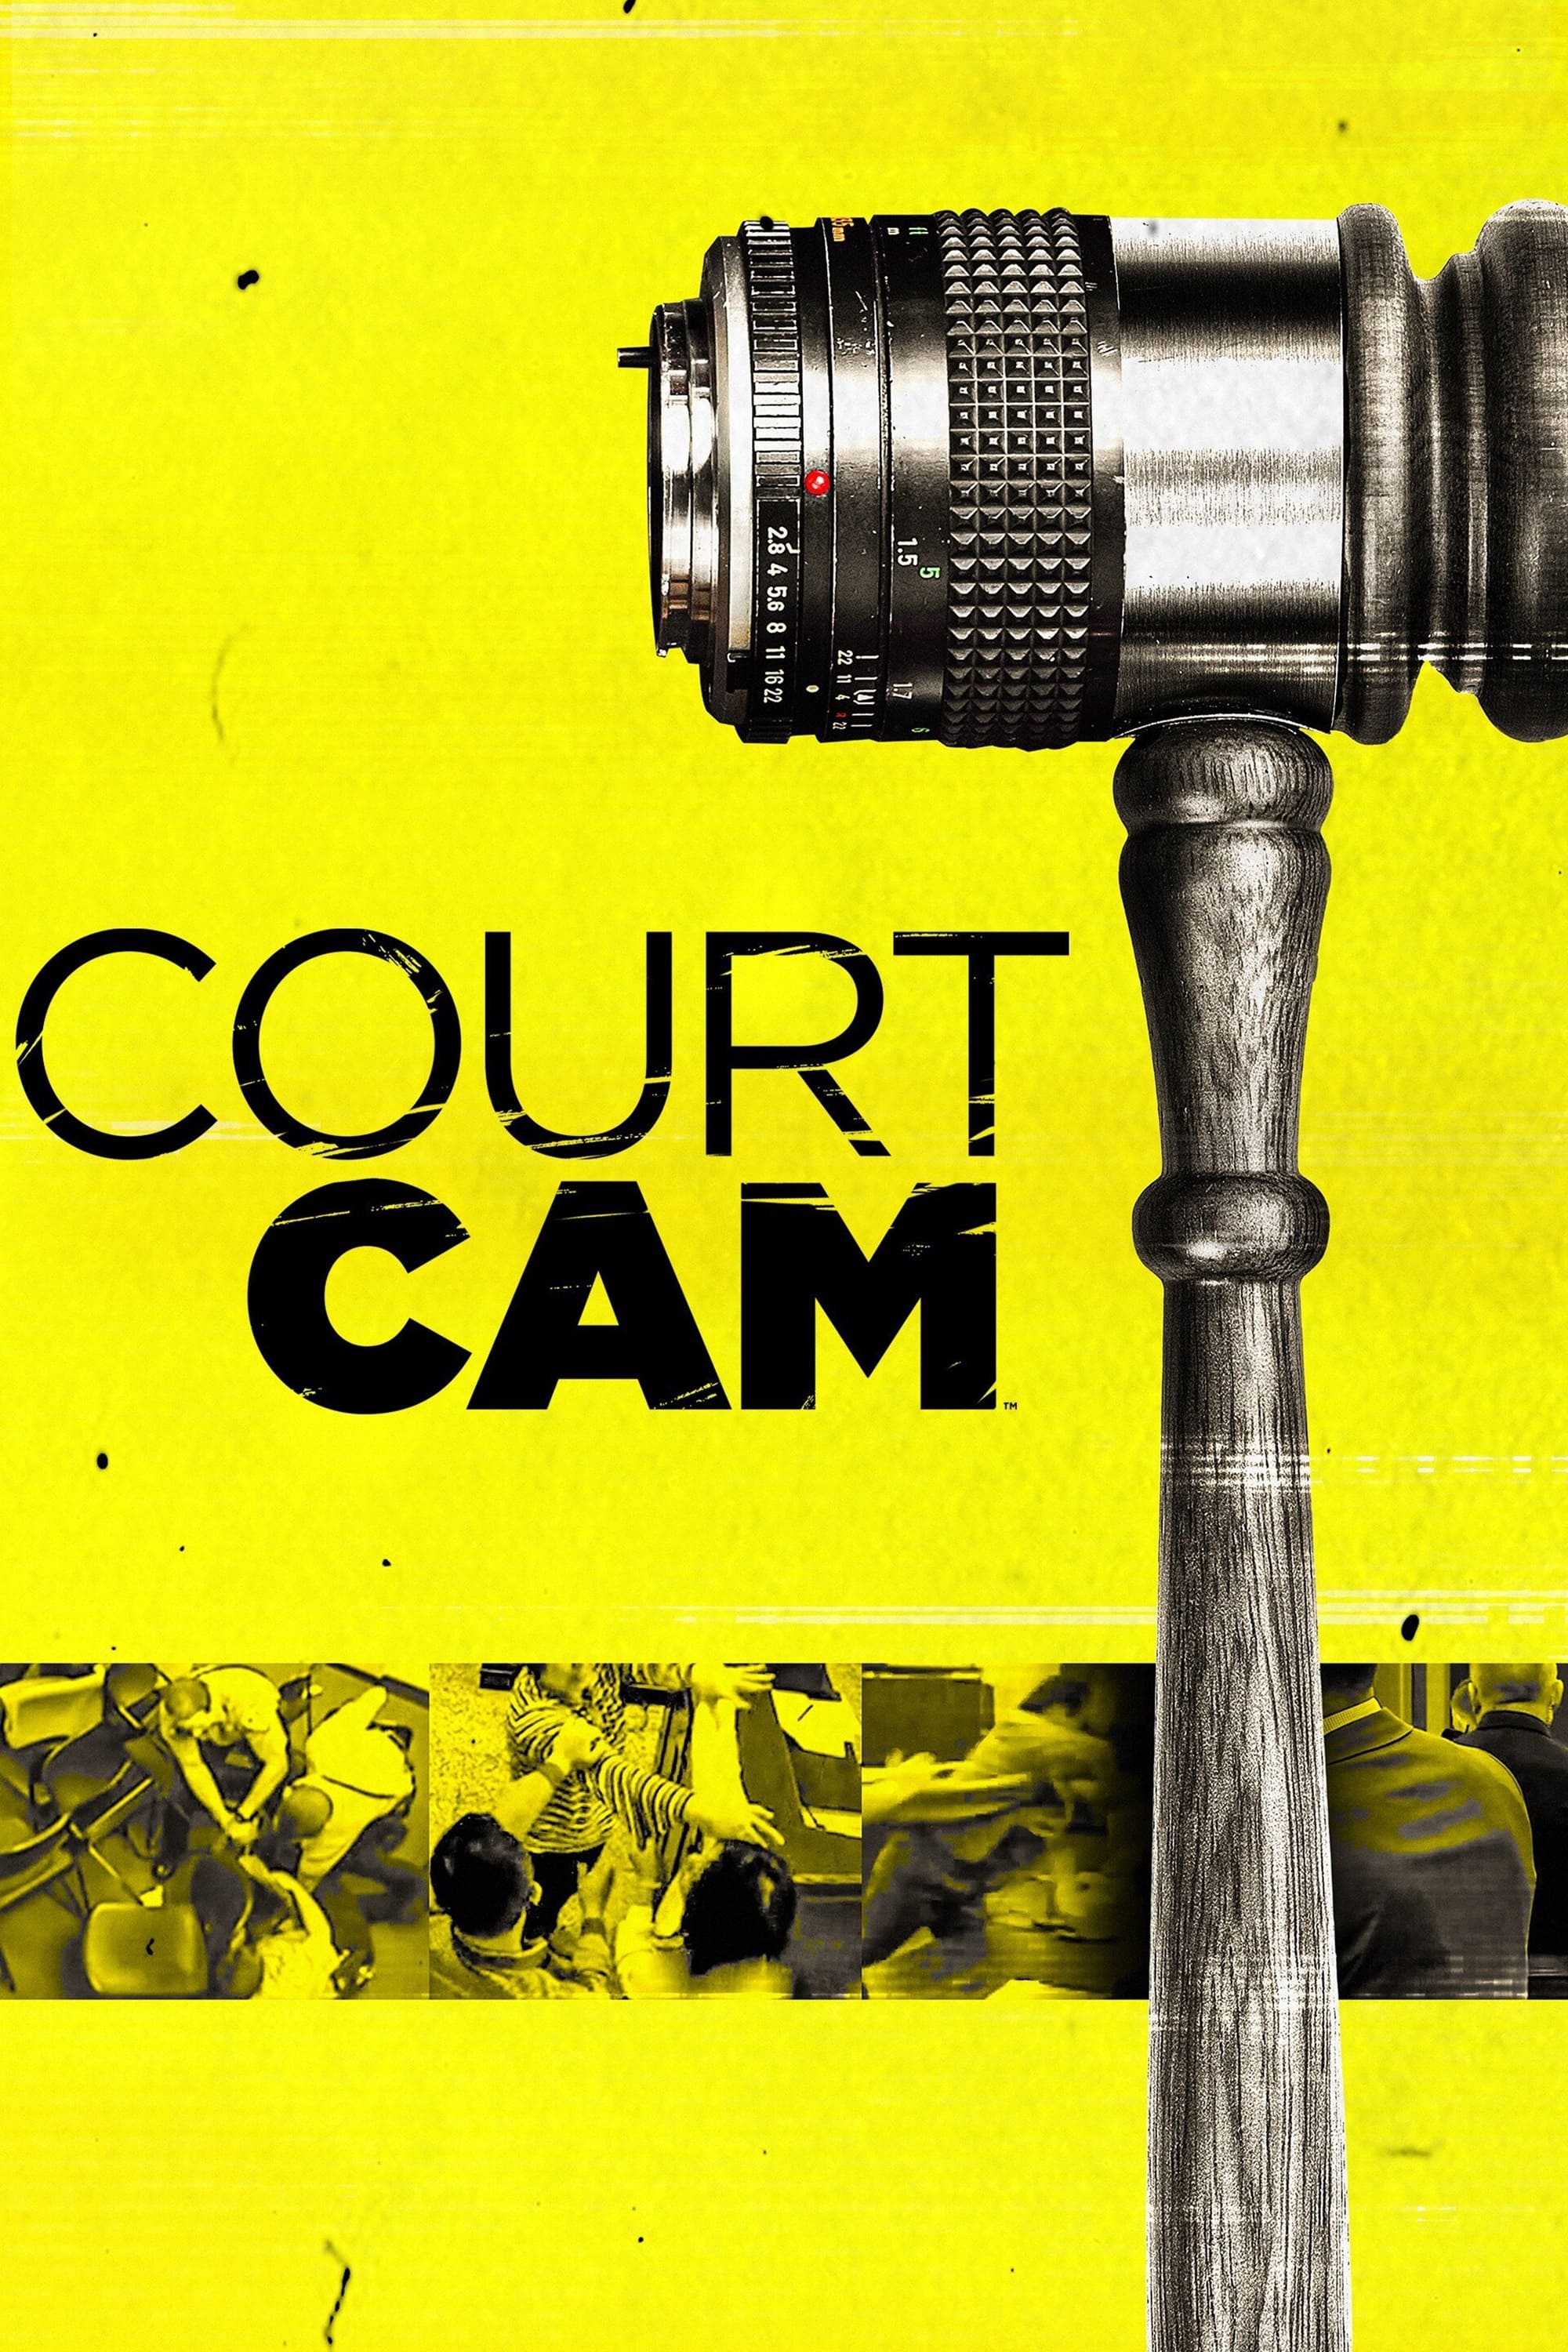 Court Cam (S07E09)